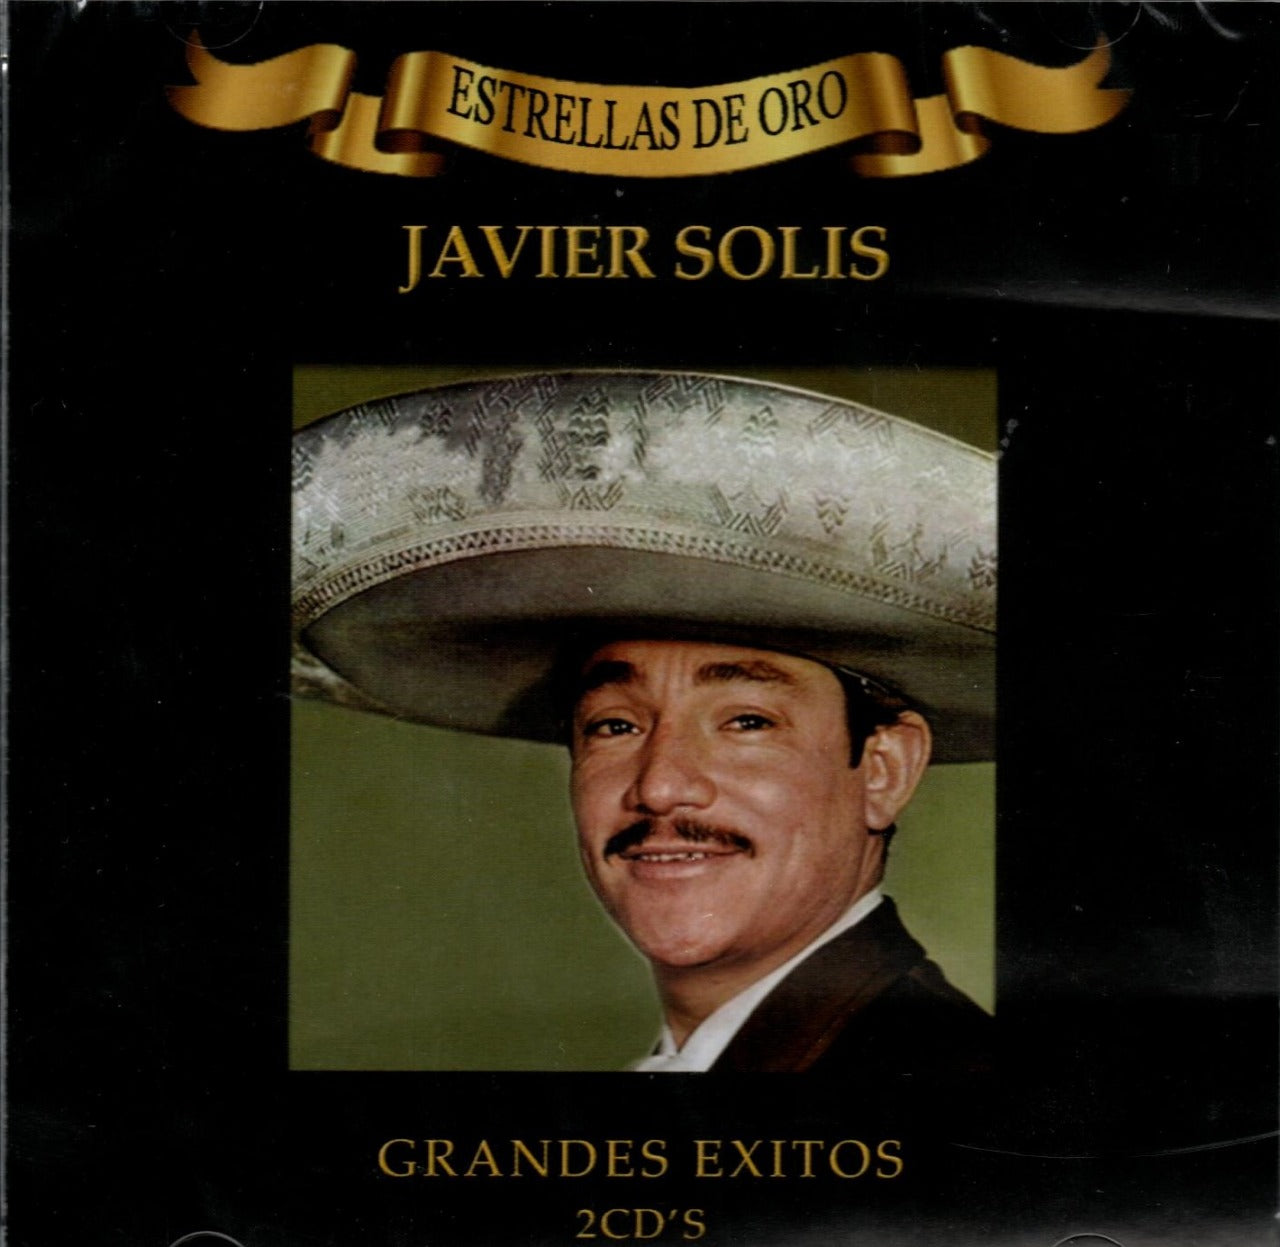 CD Javier Solis - Estrellas De Oro